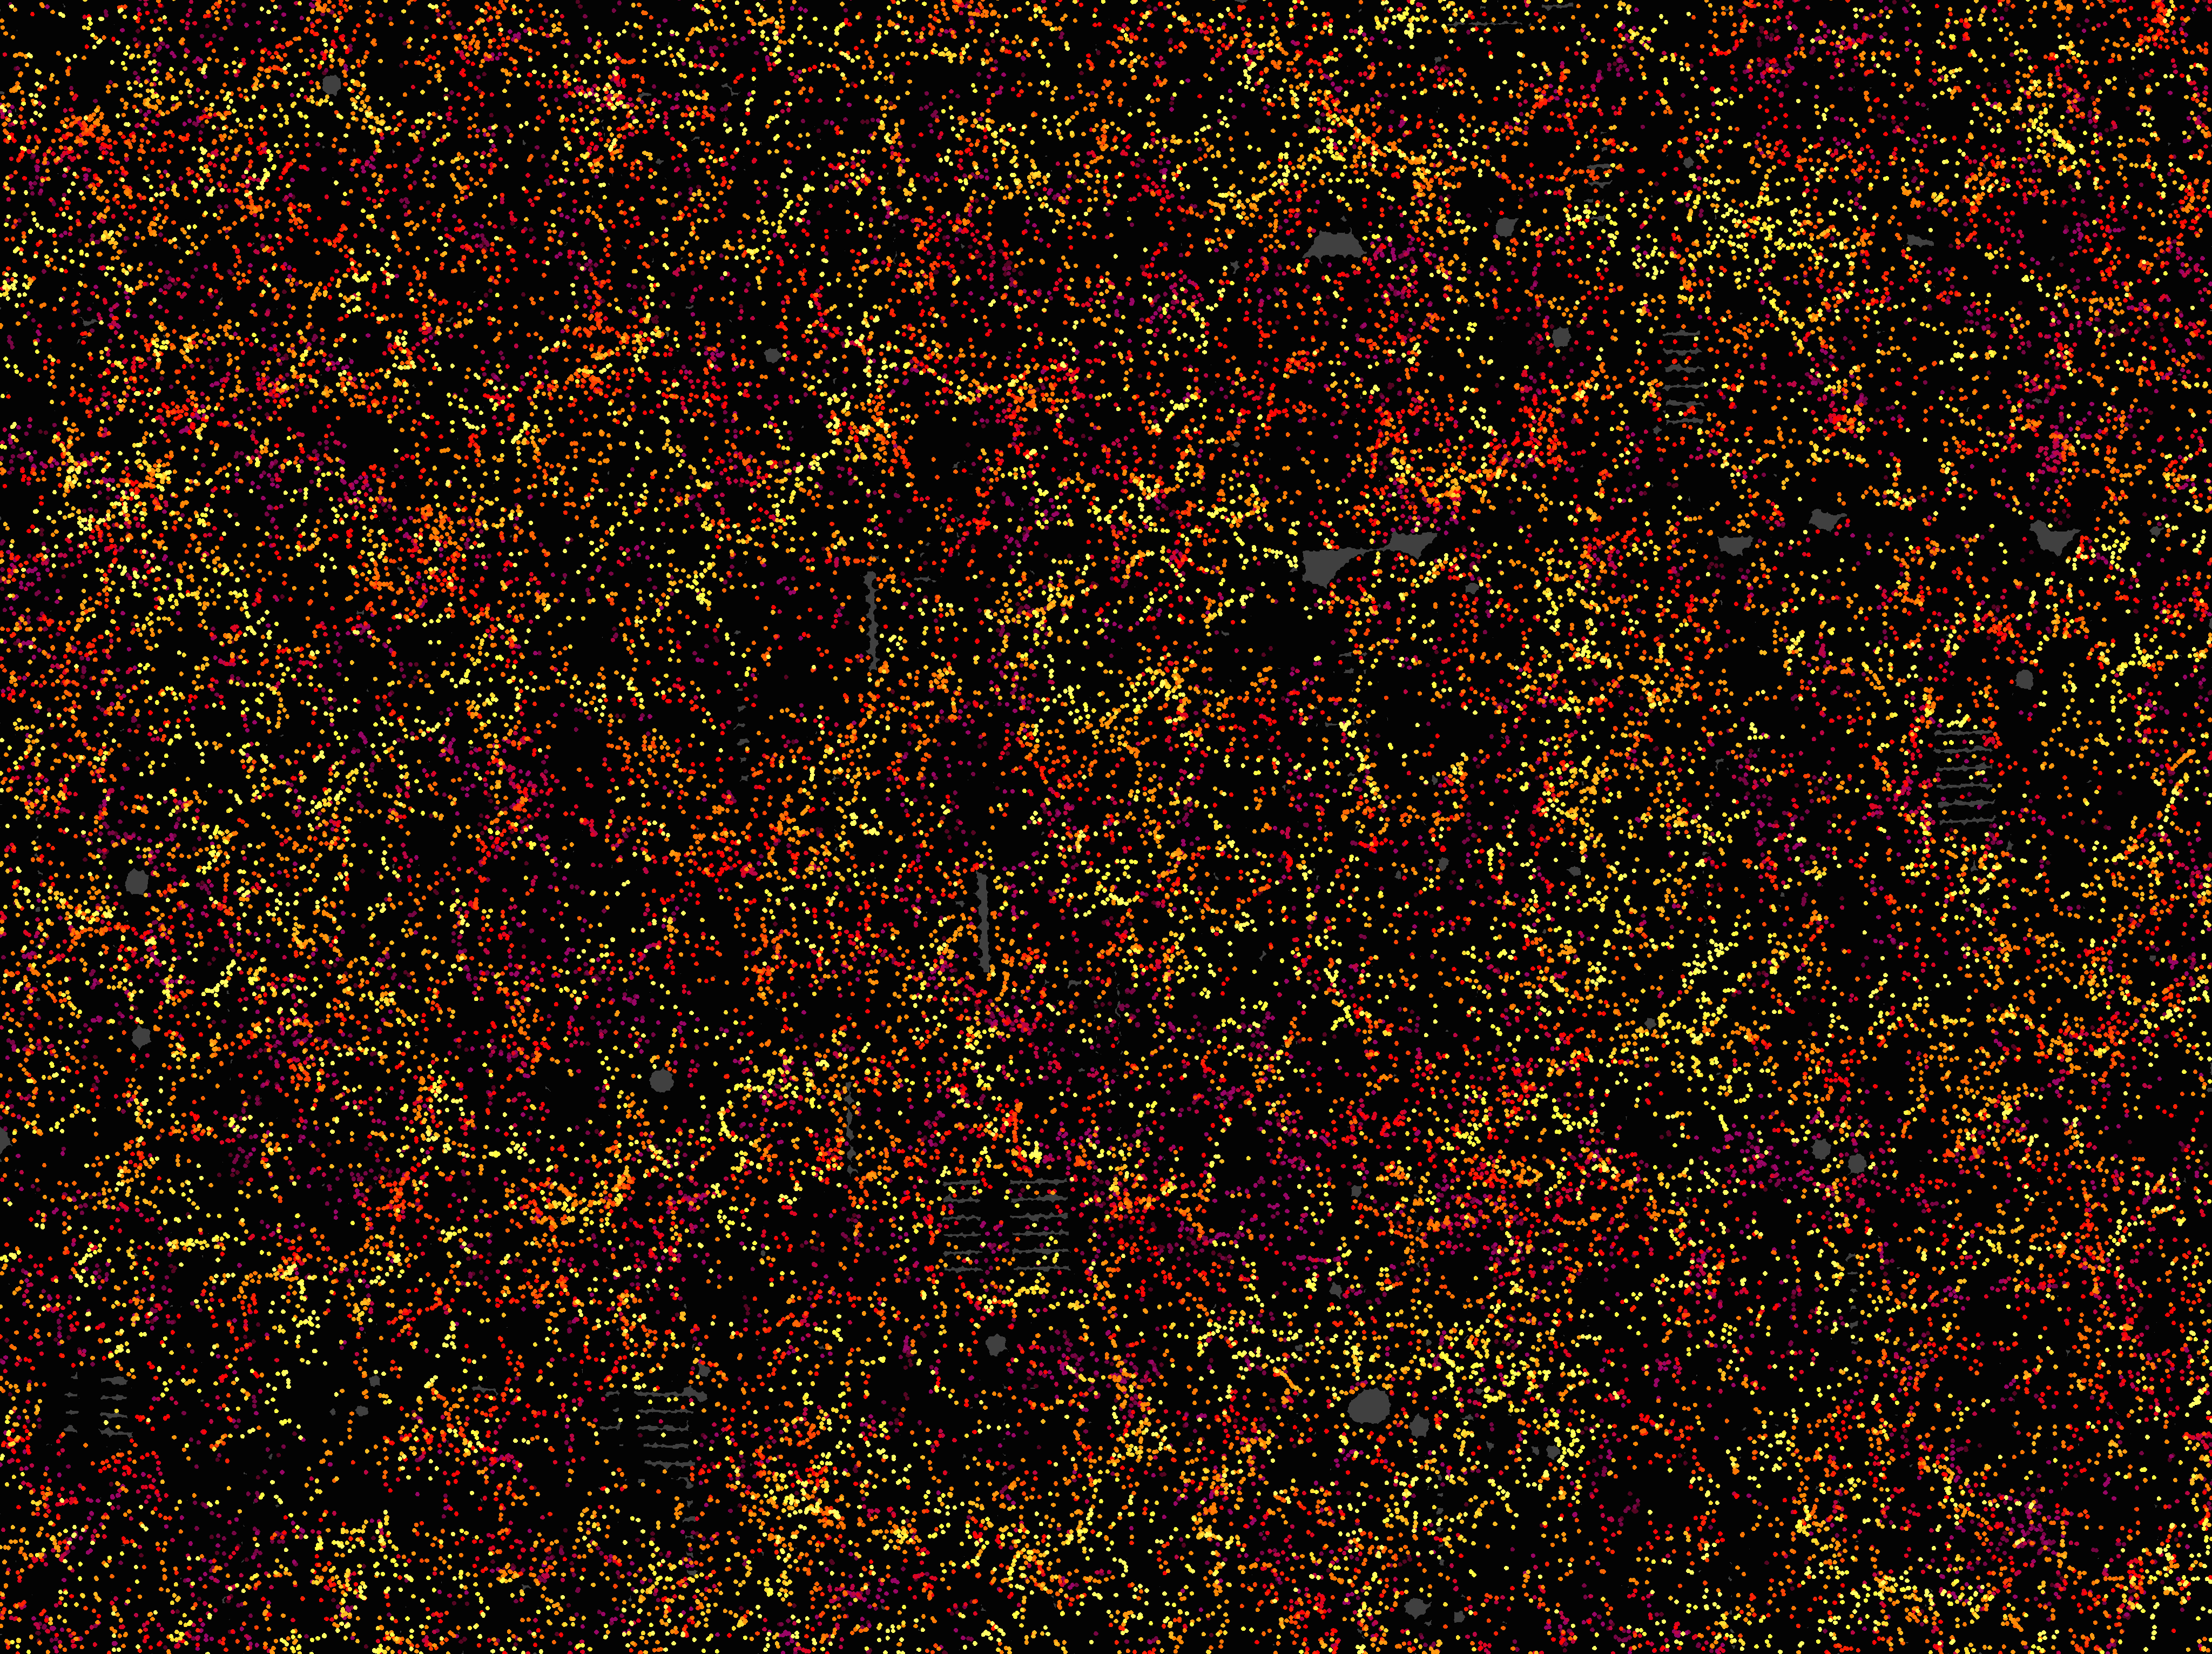 Ein Ausschnitt des Universums, jeder Punkt eine Galaxie, etwa 6 Milliarden Jahre in der Vergangenheit. Für solche Erkenntnisse benötigen die Astronomen immer größere Teleskope. Hier ein Überblick. 